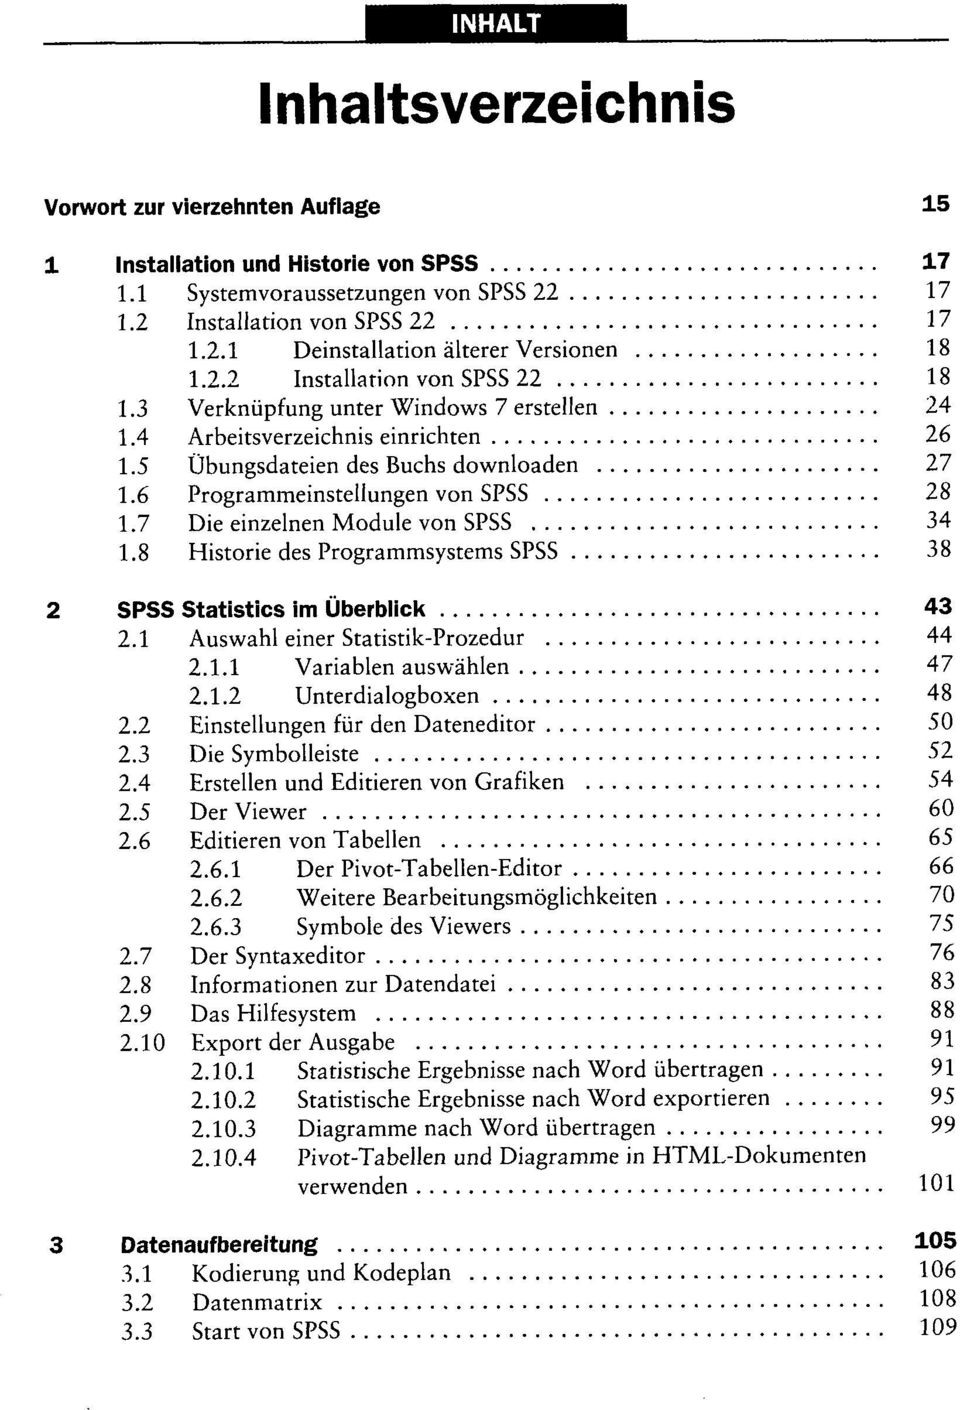 7 Die einzelnen Module von SPSS 34 1.8 Historie des Programmsystems SPSS 38 2 SPSS Statistics im Überblick 43 2.1 Auswahl einer Statistik-Prozedur 44 2.1.1 Variablen auswählen 47 2.1.2 Unterdialogboxen 48 2.